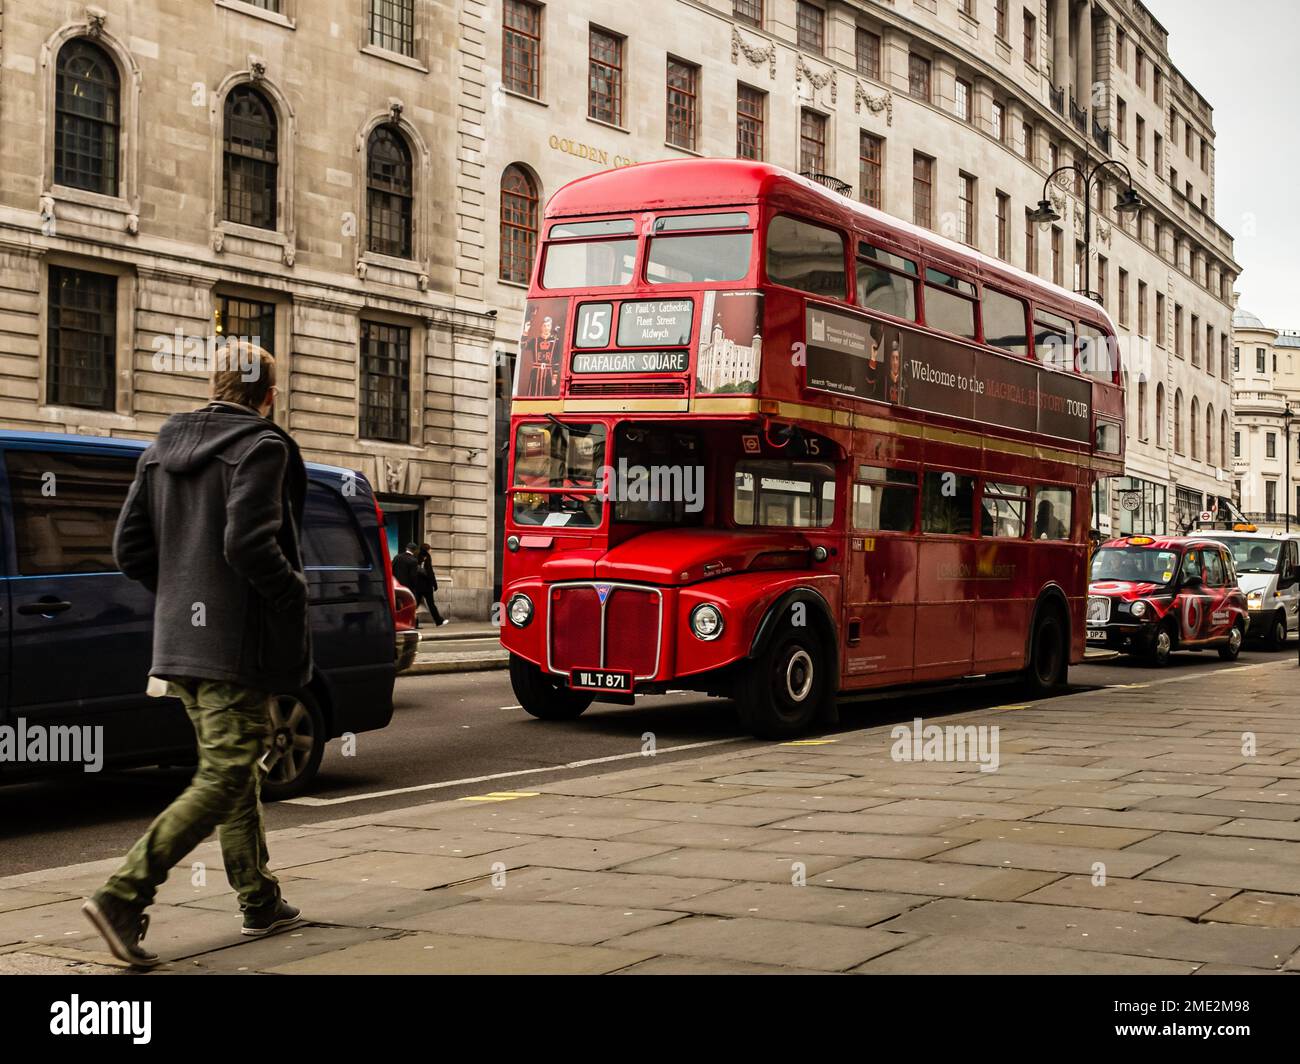 Londra, Regno Unito, 07th, dicembre 2013: Un autobus rosso a due piani e un cabbie nero sono in auto su trafalgar Square Road. Foto Stock